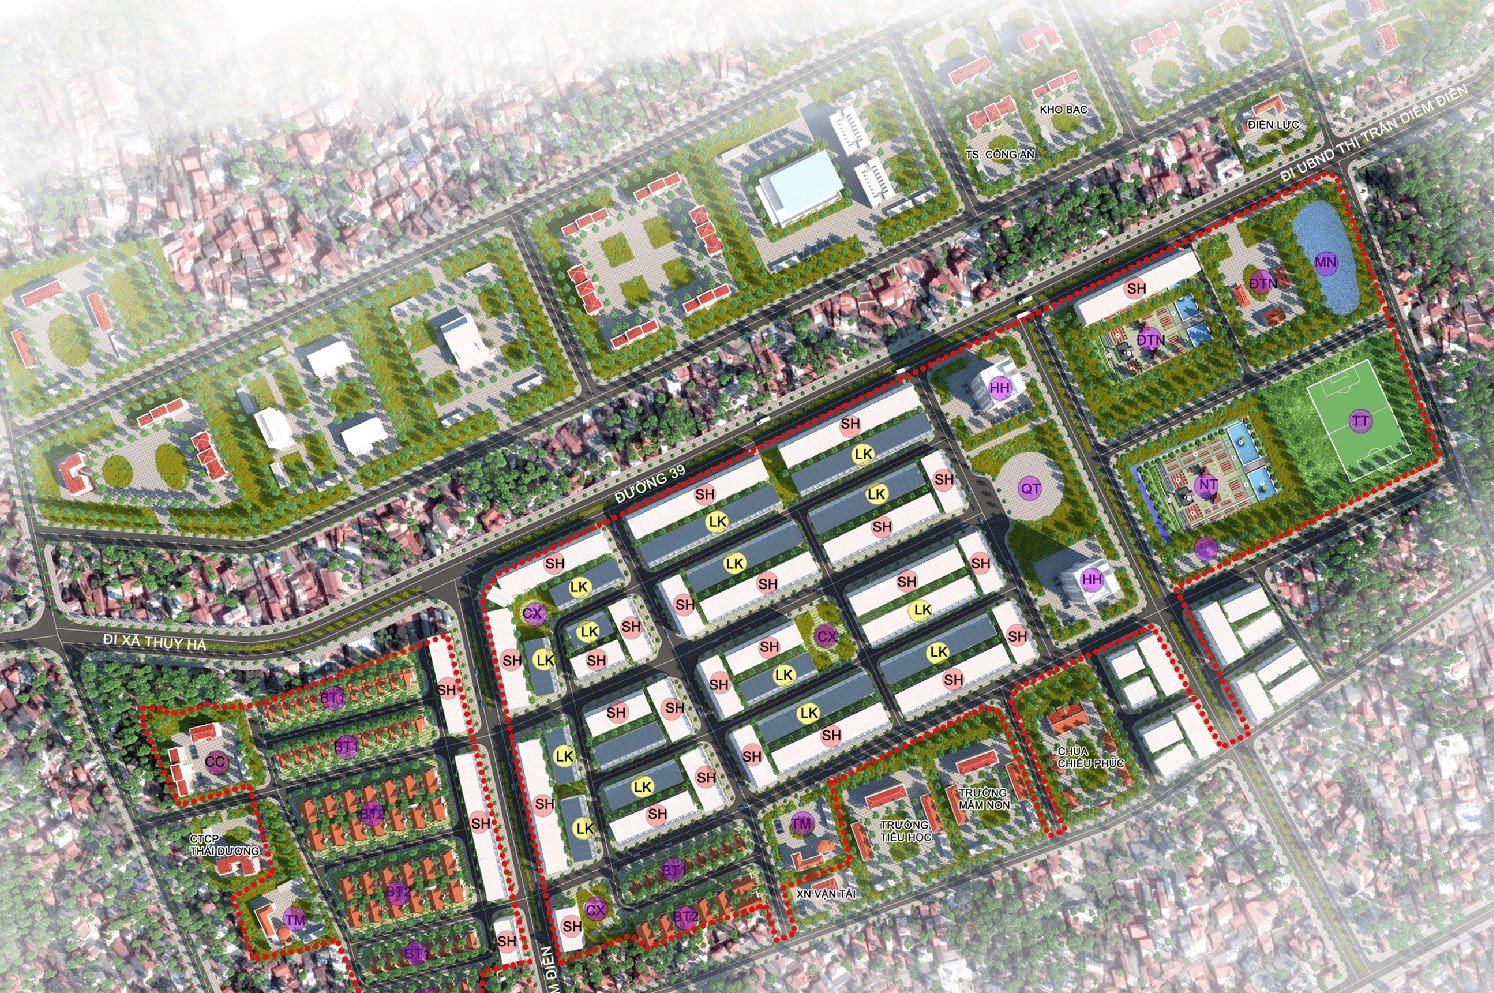 Cần bán Đất nền dự án đường 39, Thị trấn Diêm Điền, Diện tích 100m², Giá Thương lượng 4